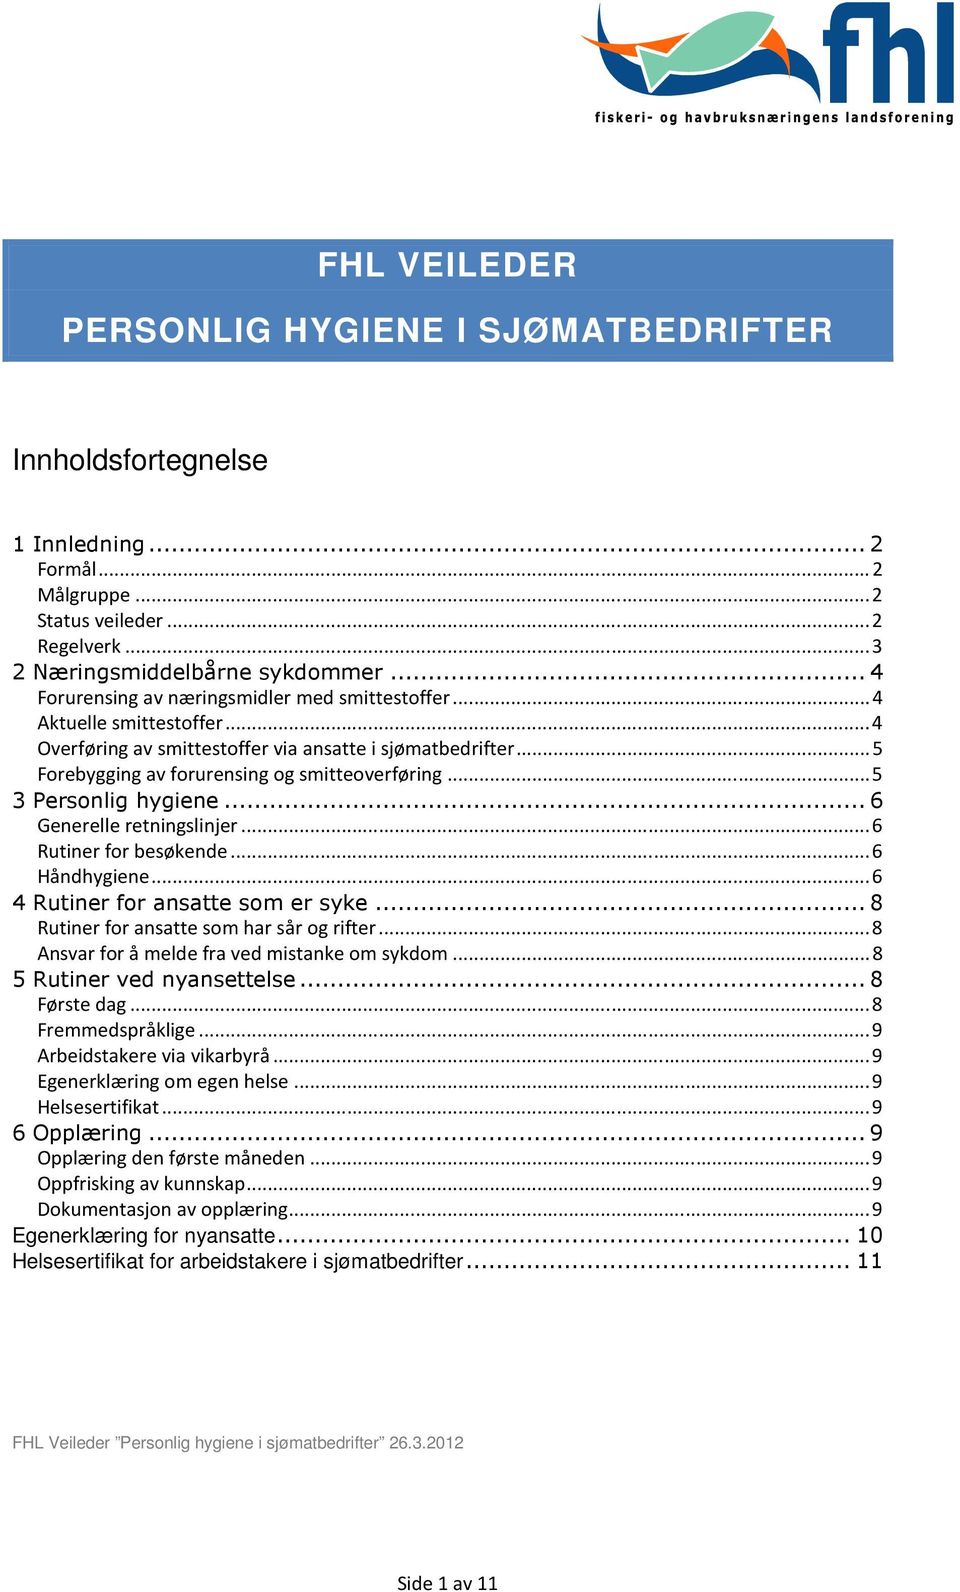 .. 5 3 Personlig hygiene... 6 Generelle retningslinjer... 6 Rutiner for besøkende... 6 Håndhygiene... 6 4 Rutiner for ansatte som er syke... 8 Rutiner for ansatte som har sår og rifter.